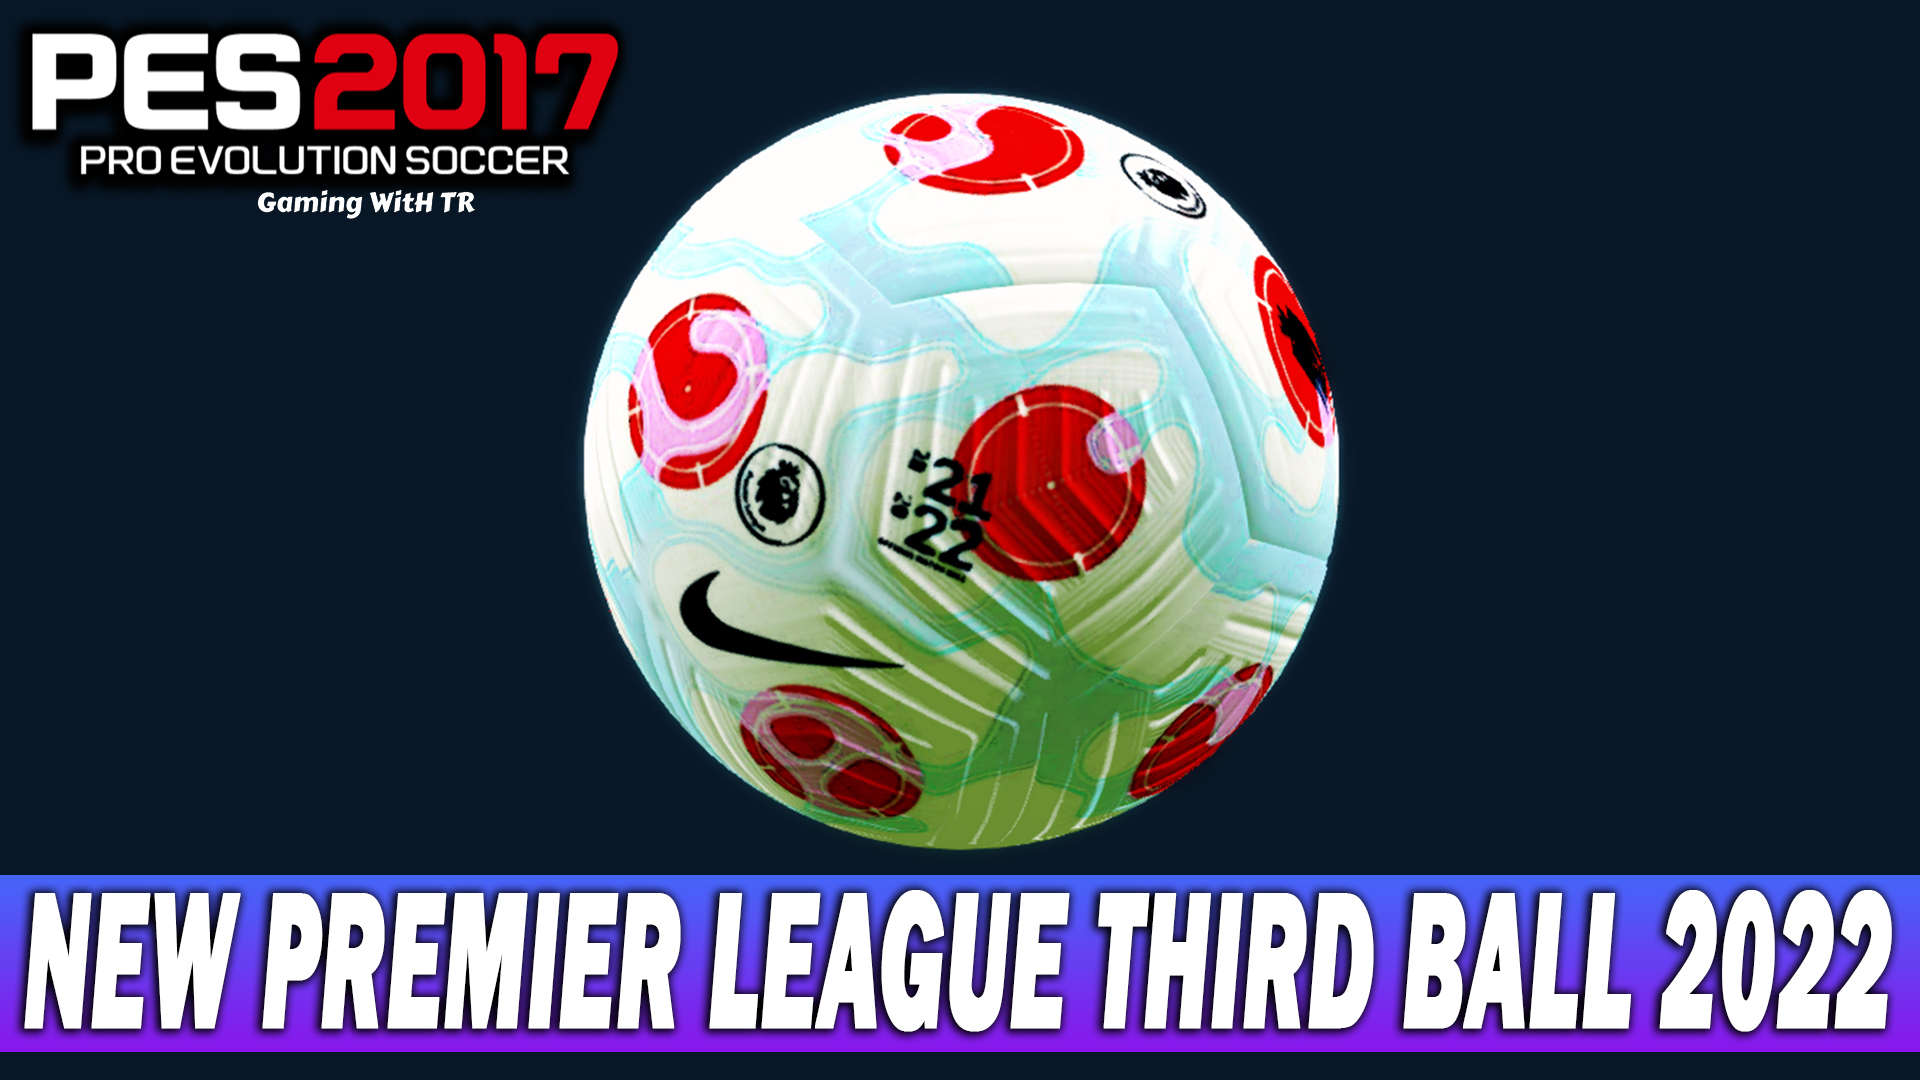 PES 2017 | New Premier League Third Ball Season 2022